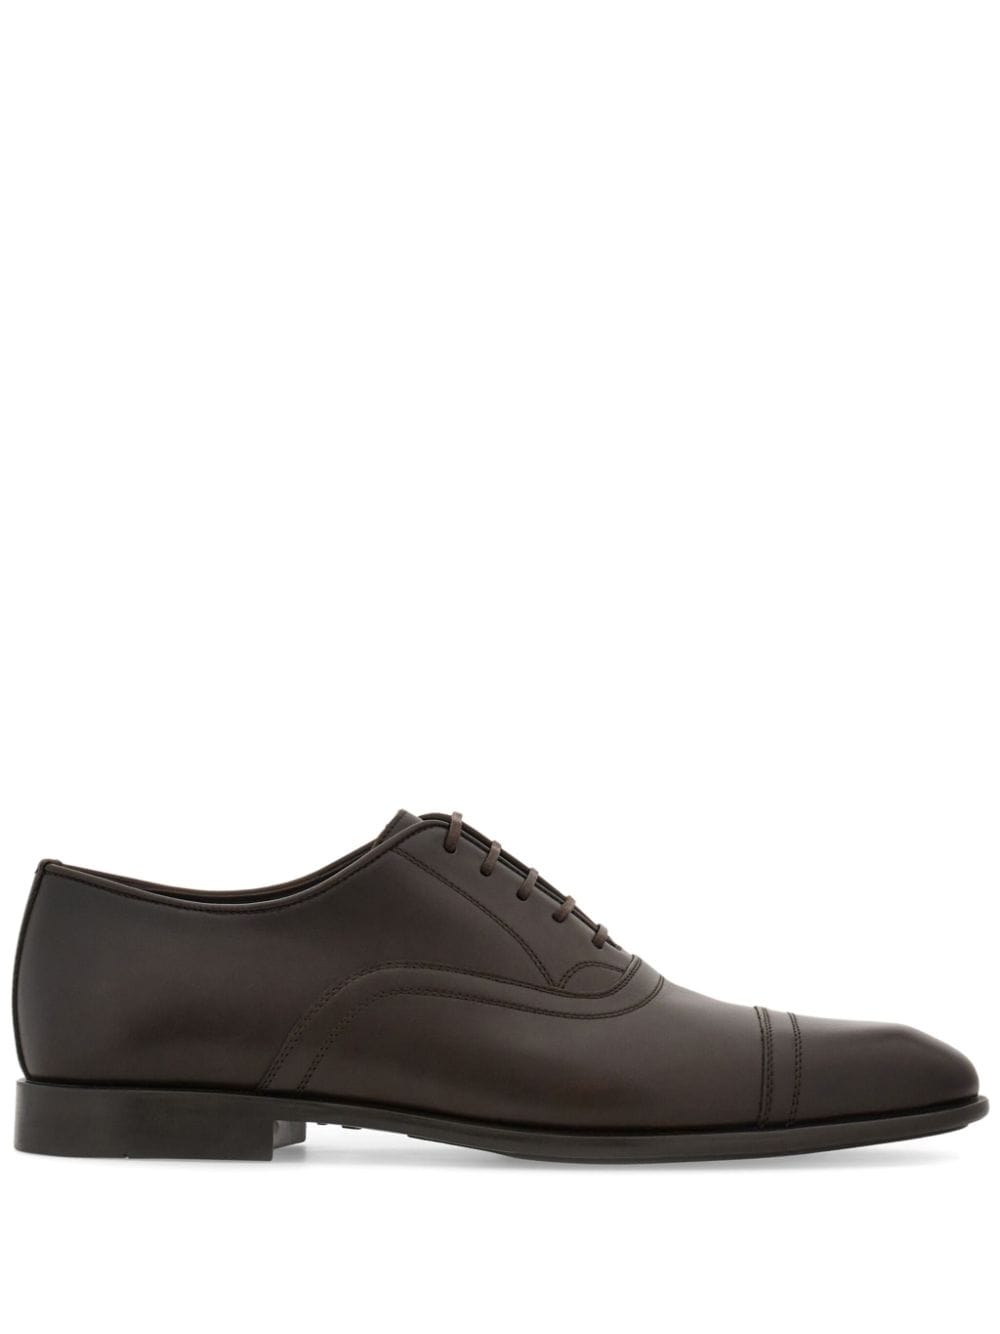 Ferragamo leather Oxford shoes - Brown von Ferragamo